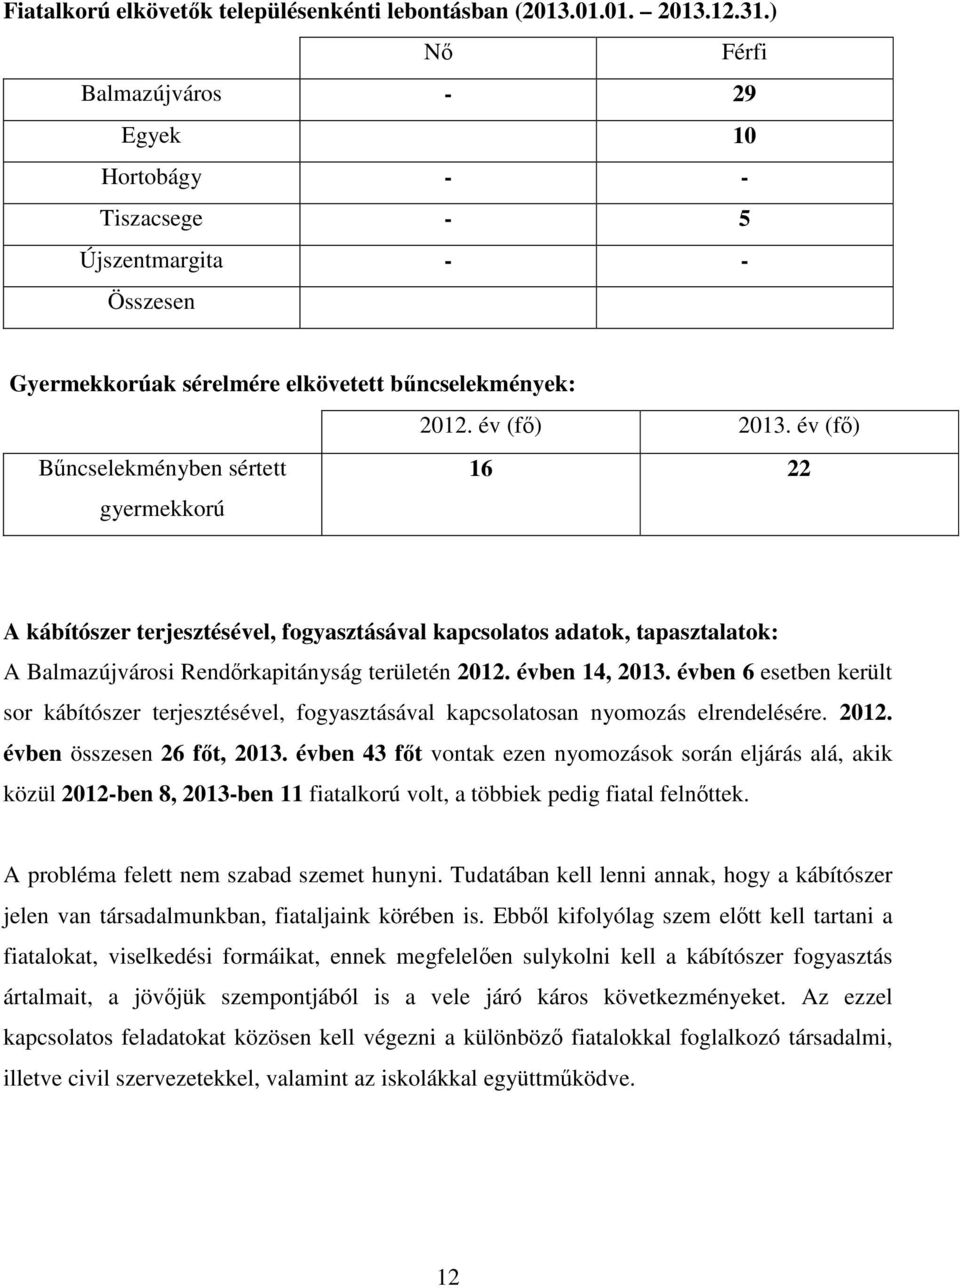 év (fő) Bűncselekményben sértett gyermekkorú 16 22 A kábítószer terjesztésével, fogyasztásával kapcsolatos adatok, tapasztalatok: A Balmazújvárosi Rendőrkapitányság területén 2012. évben 14, 2013.